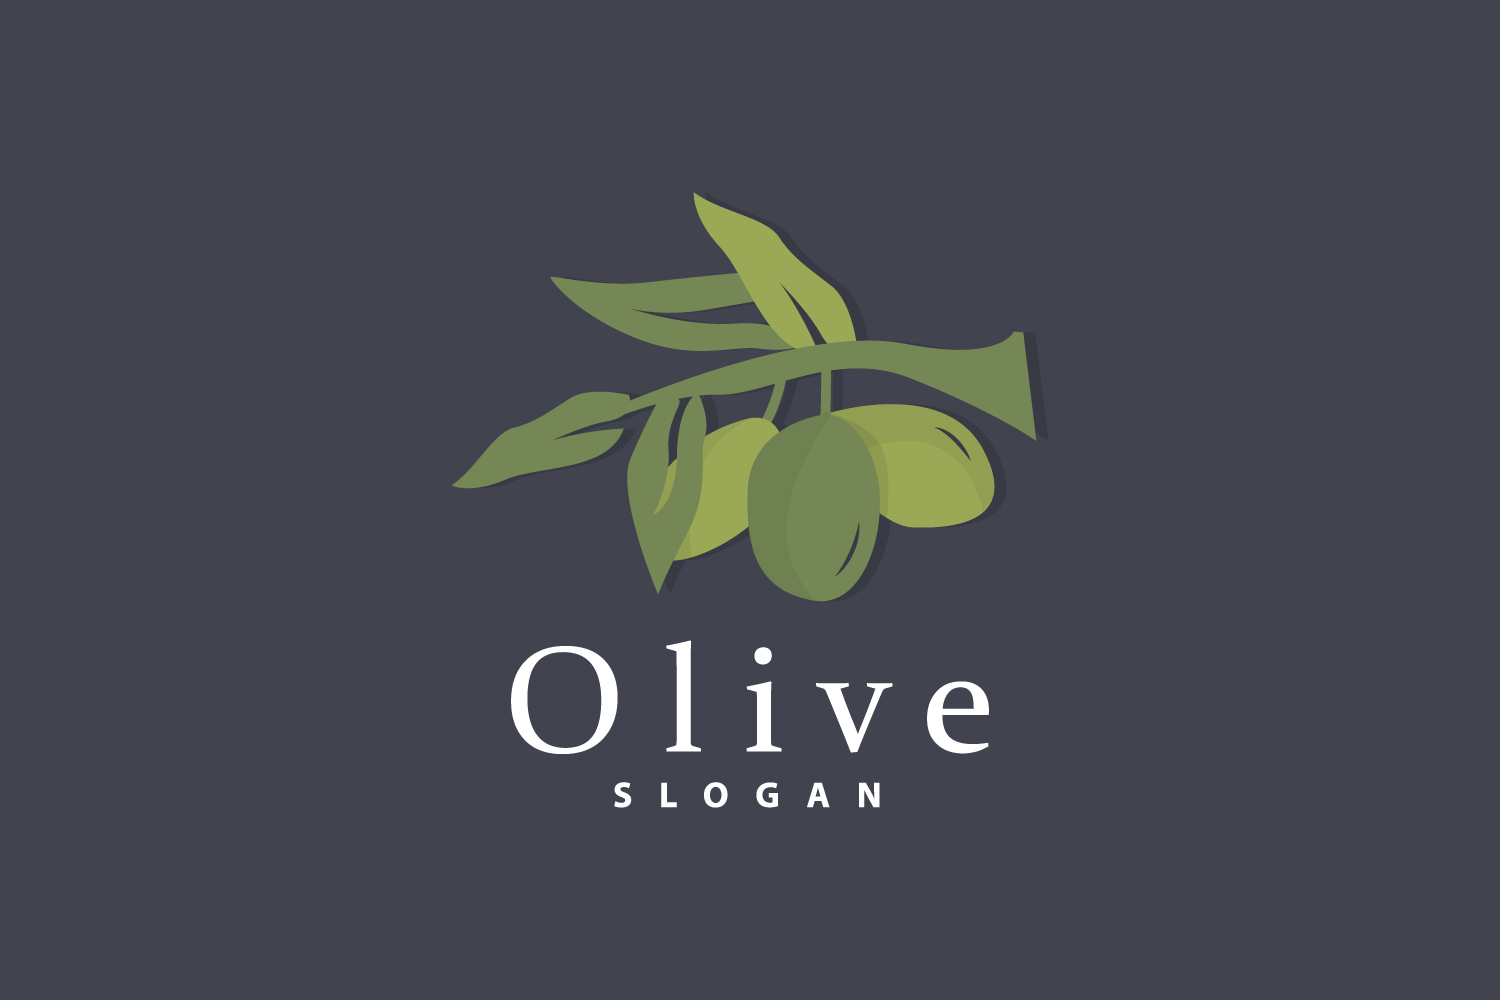 Olive Oil Logo Olive Leaf PlantV8